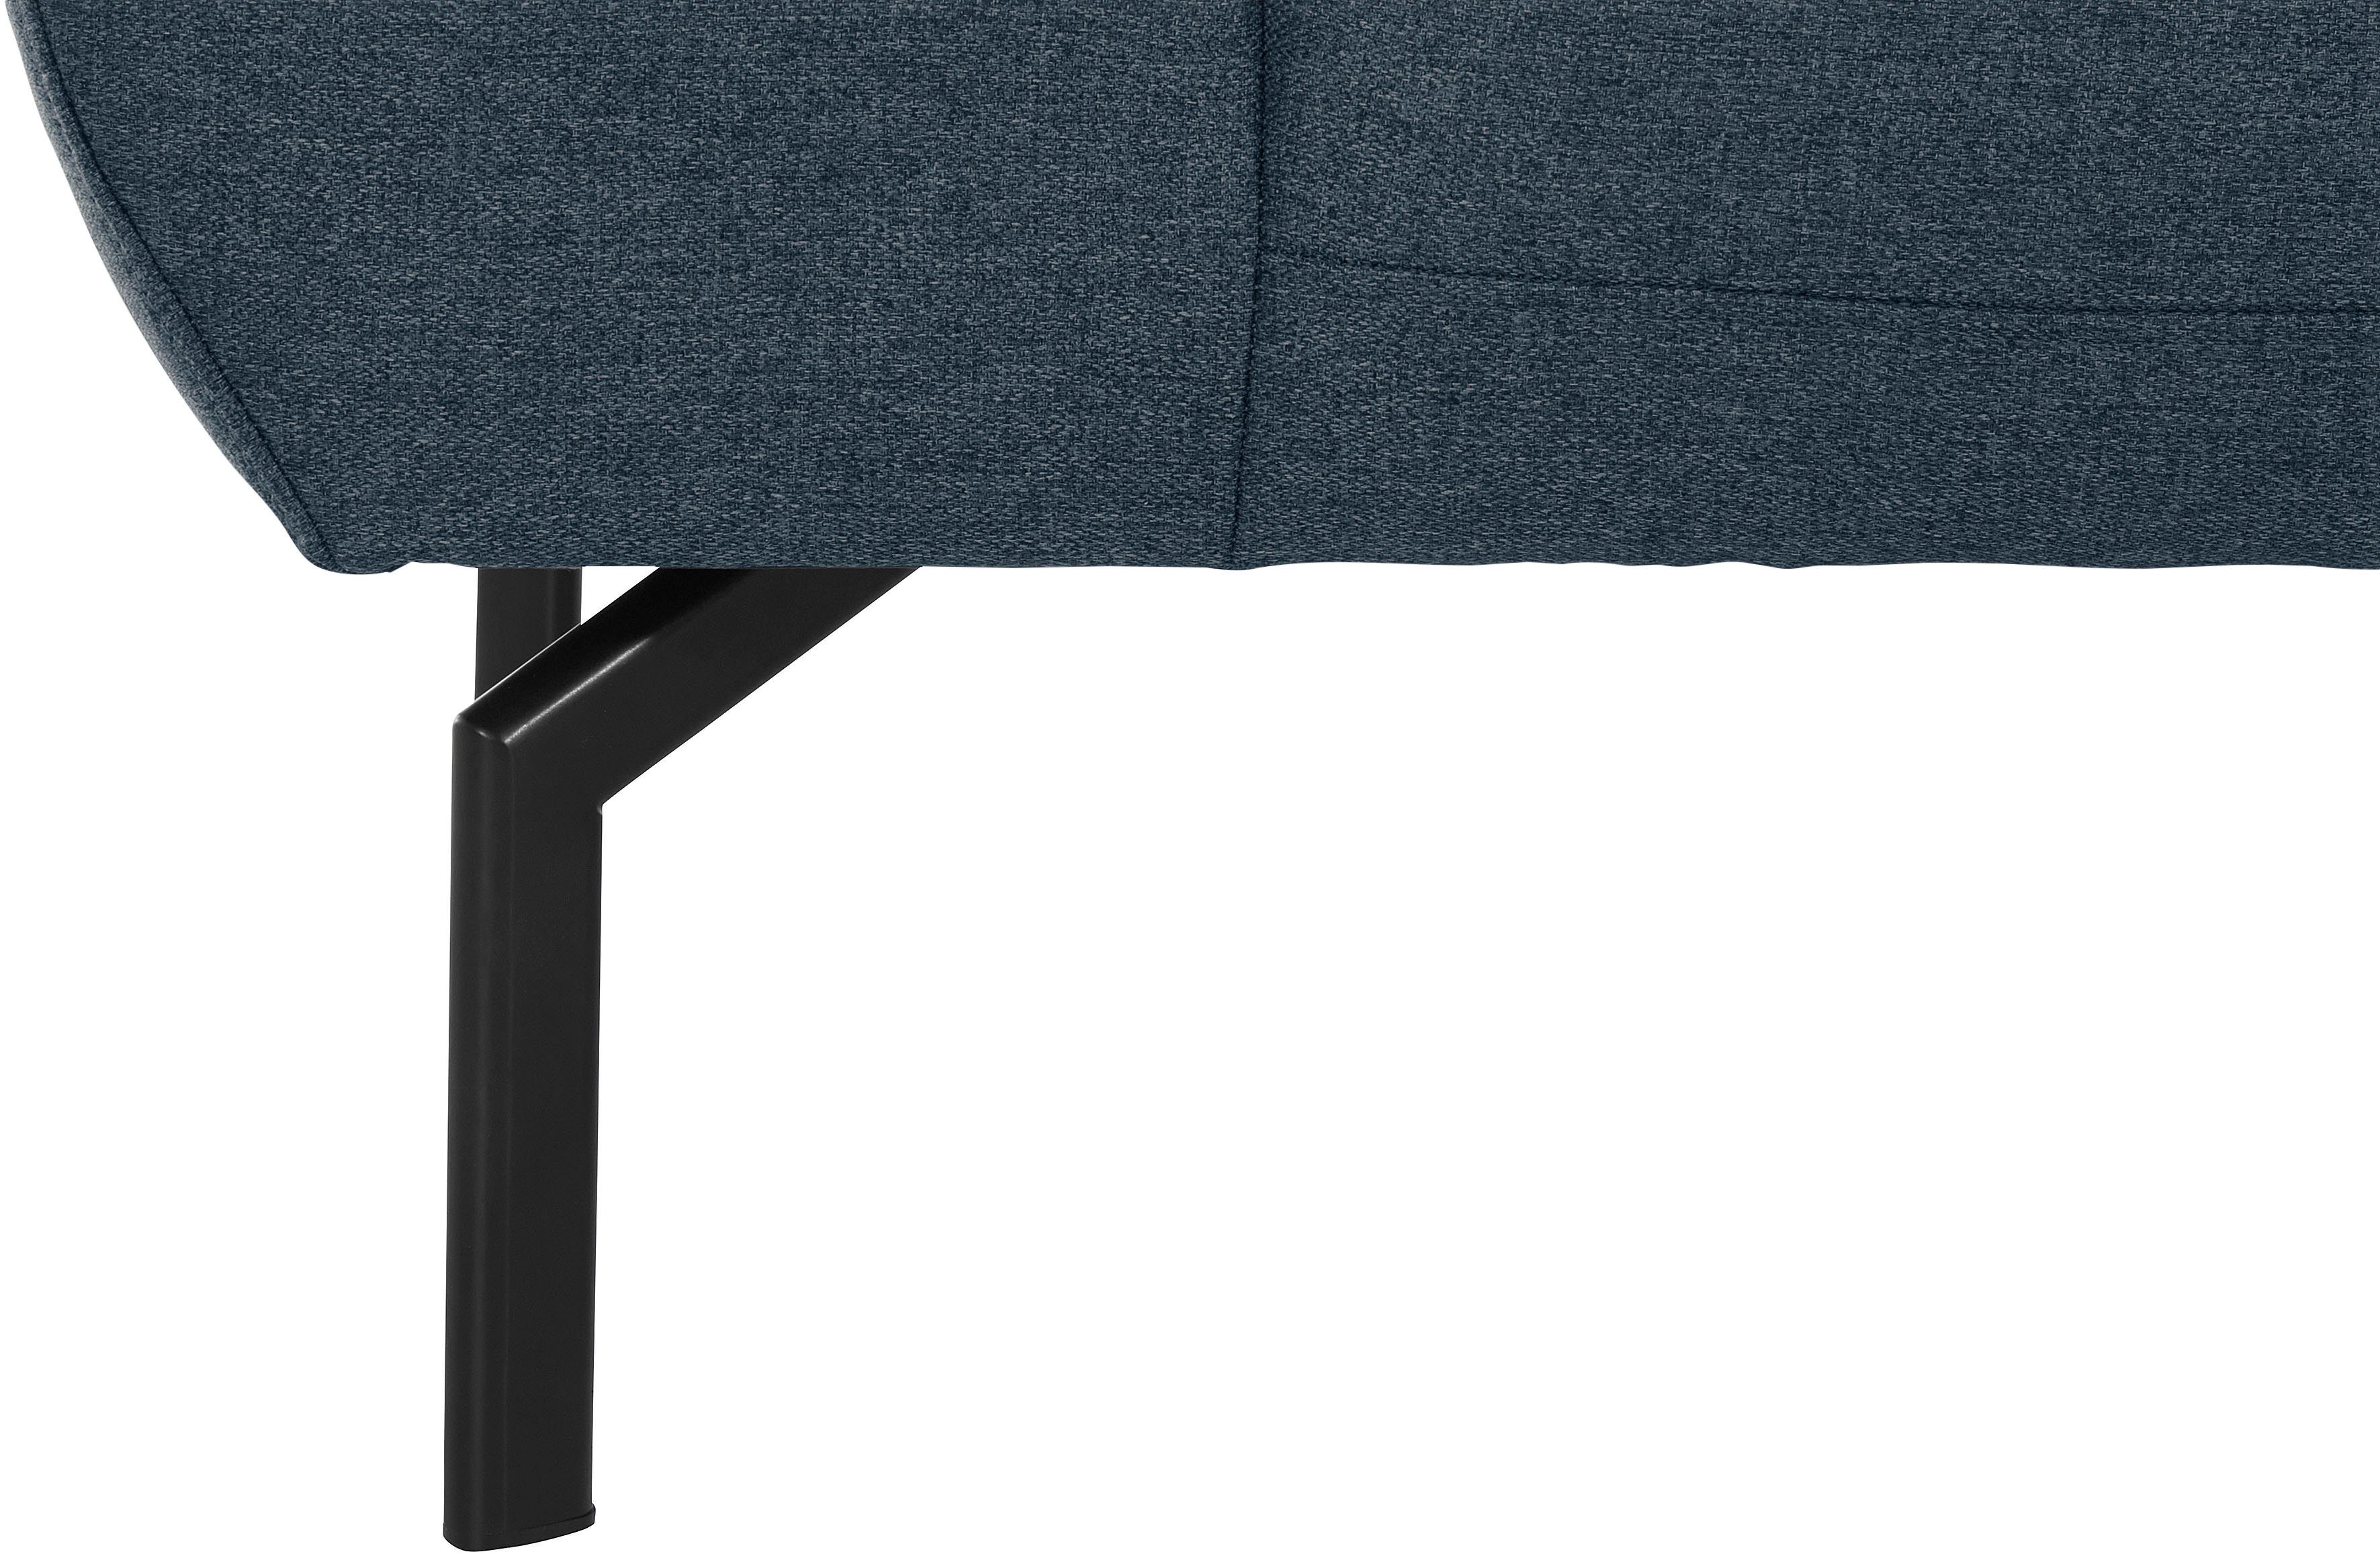 Luxus-Microfaser of Luxus, Lederoptik 2,5-Sitzer in wahlweise Rückenverstellung, Places mit Style Trapino